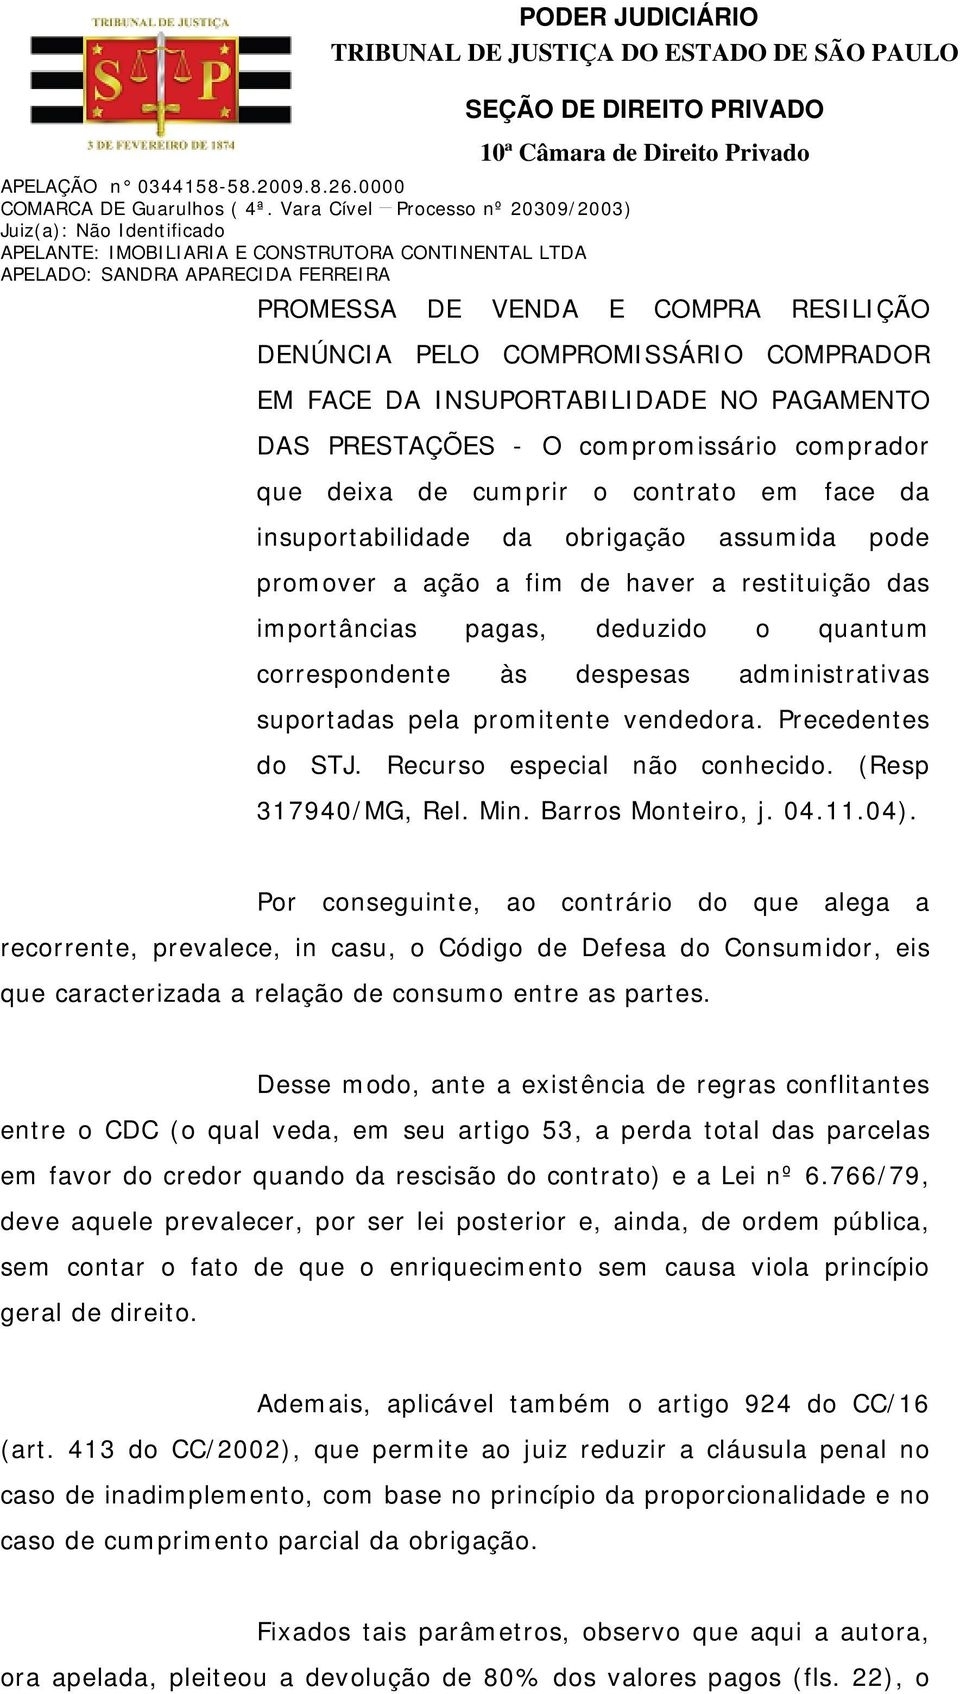 promitente vendedora. Precedentes do STJ. Recurso especial não conhecido. (Resp 317940/MG, Rel. Min. Barros Monteiro, j. 04.11.04).